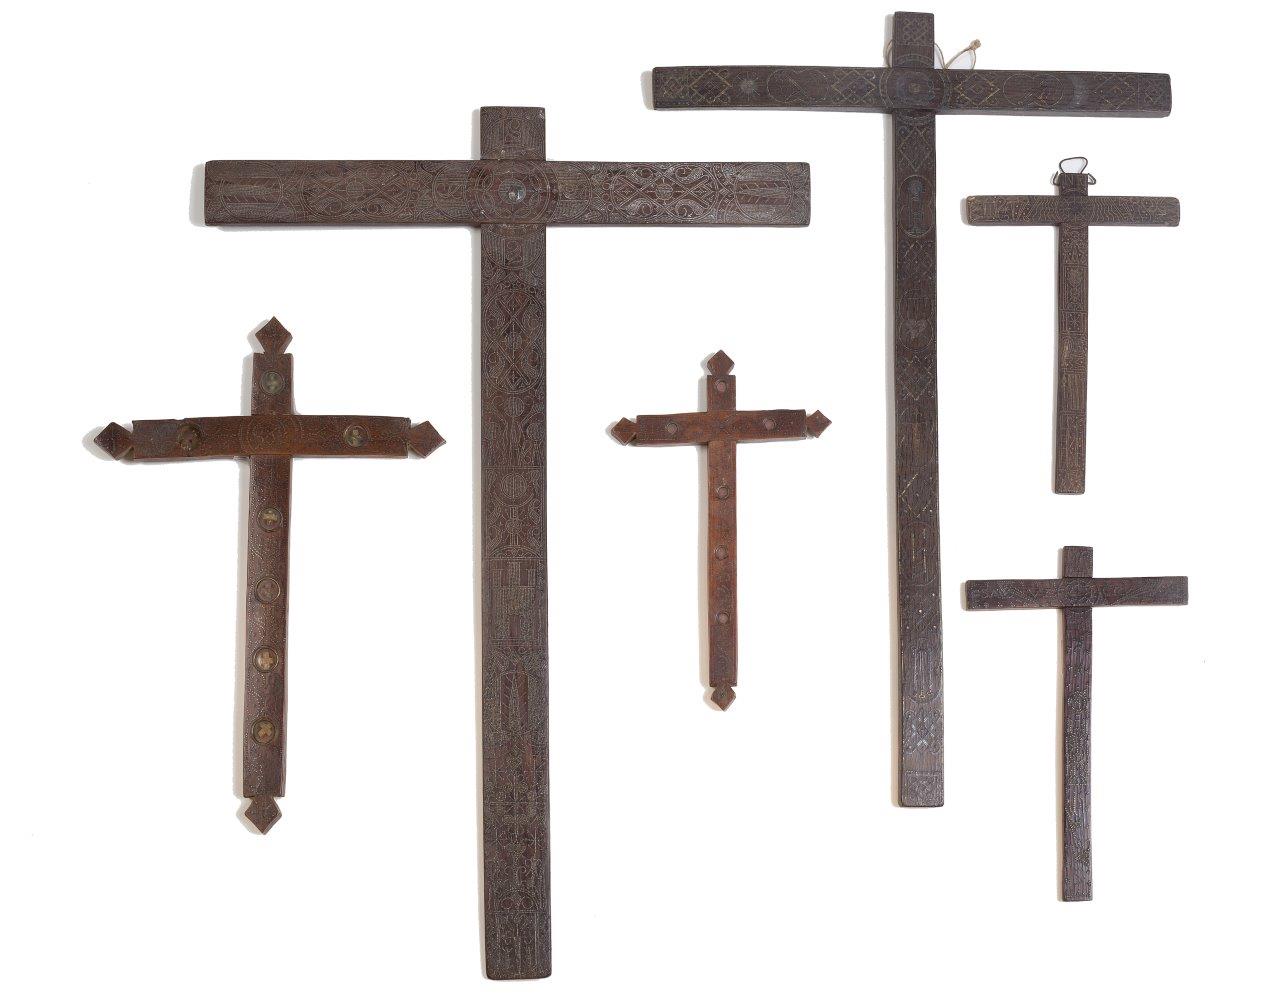 Cruz relicario de madera con incrustaciones en metal. Trabajo castellano, S. XVIII - XIX